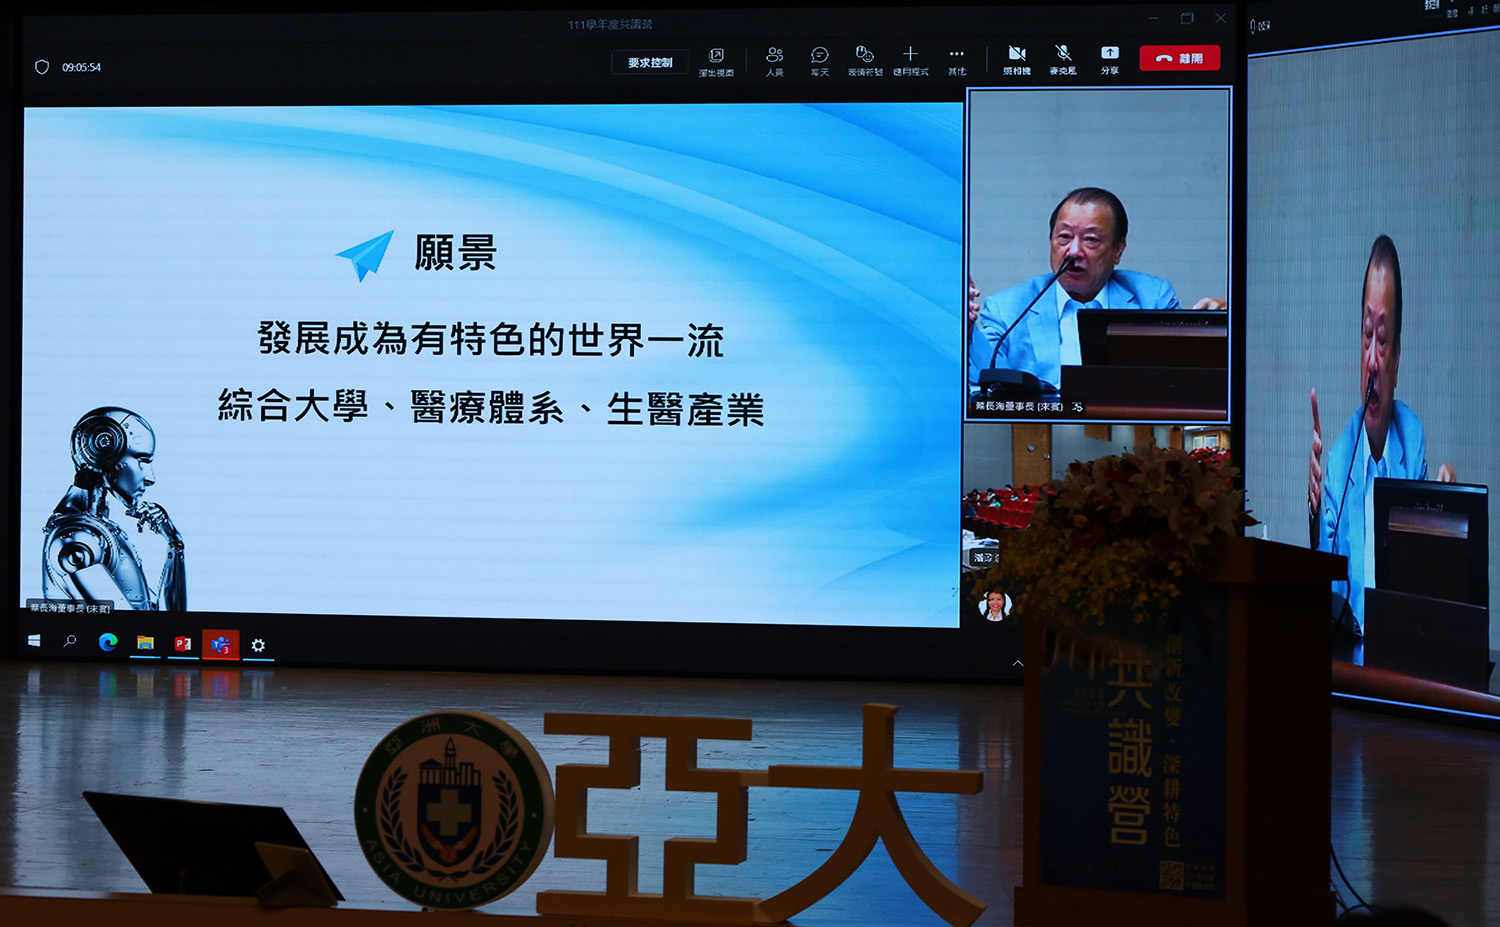 圖為亞大創辦人蔡長海表示，亞大的願景是成為有特色的世界一流綜合大學、醫療體系、生醫產業